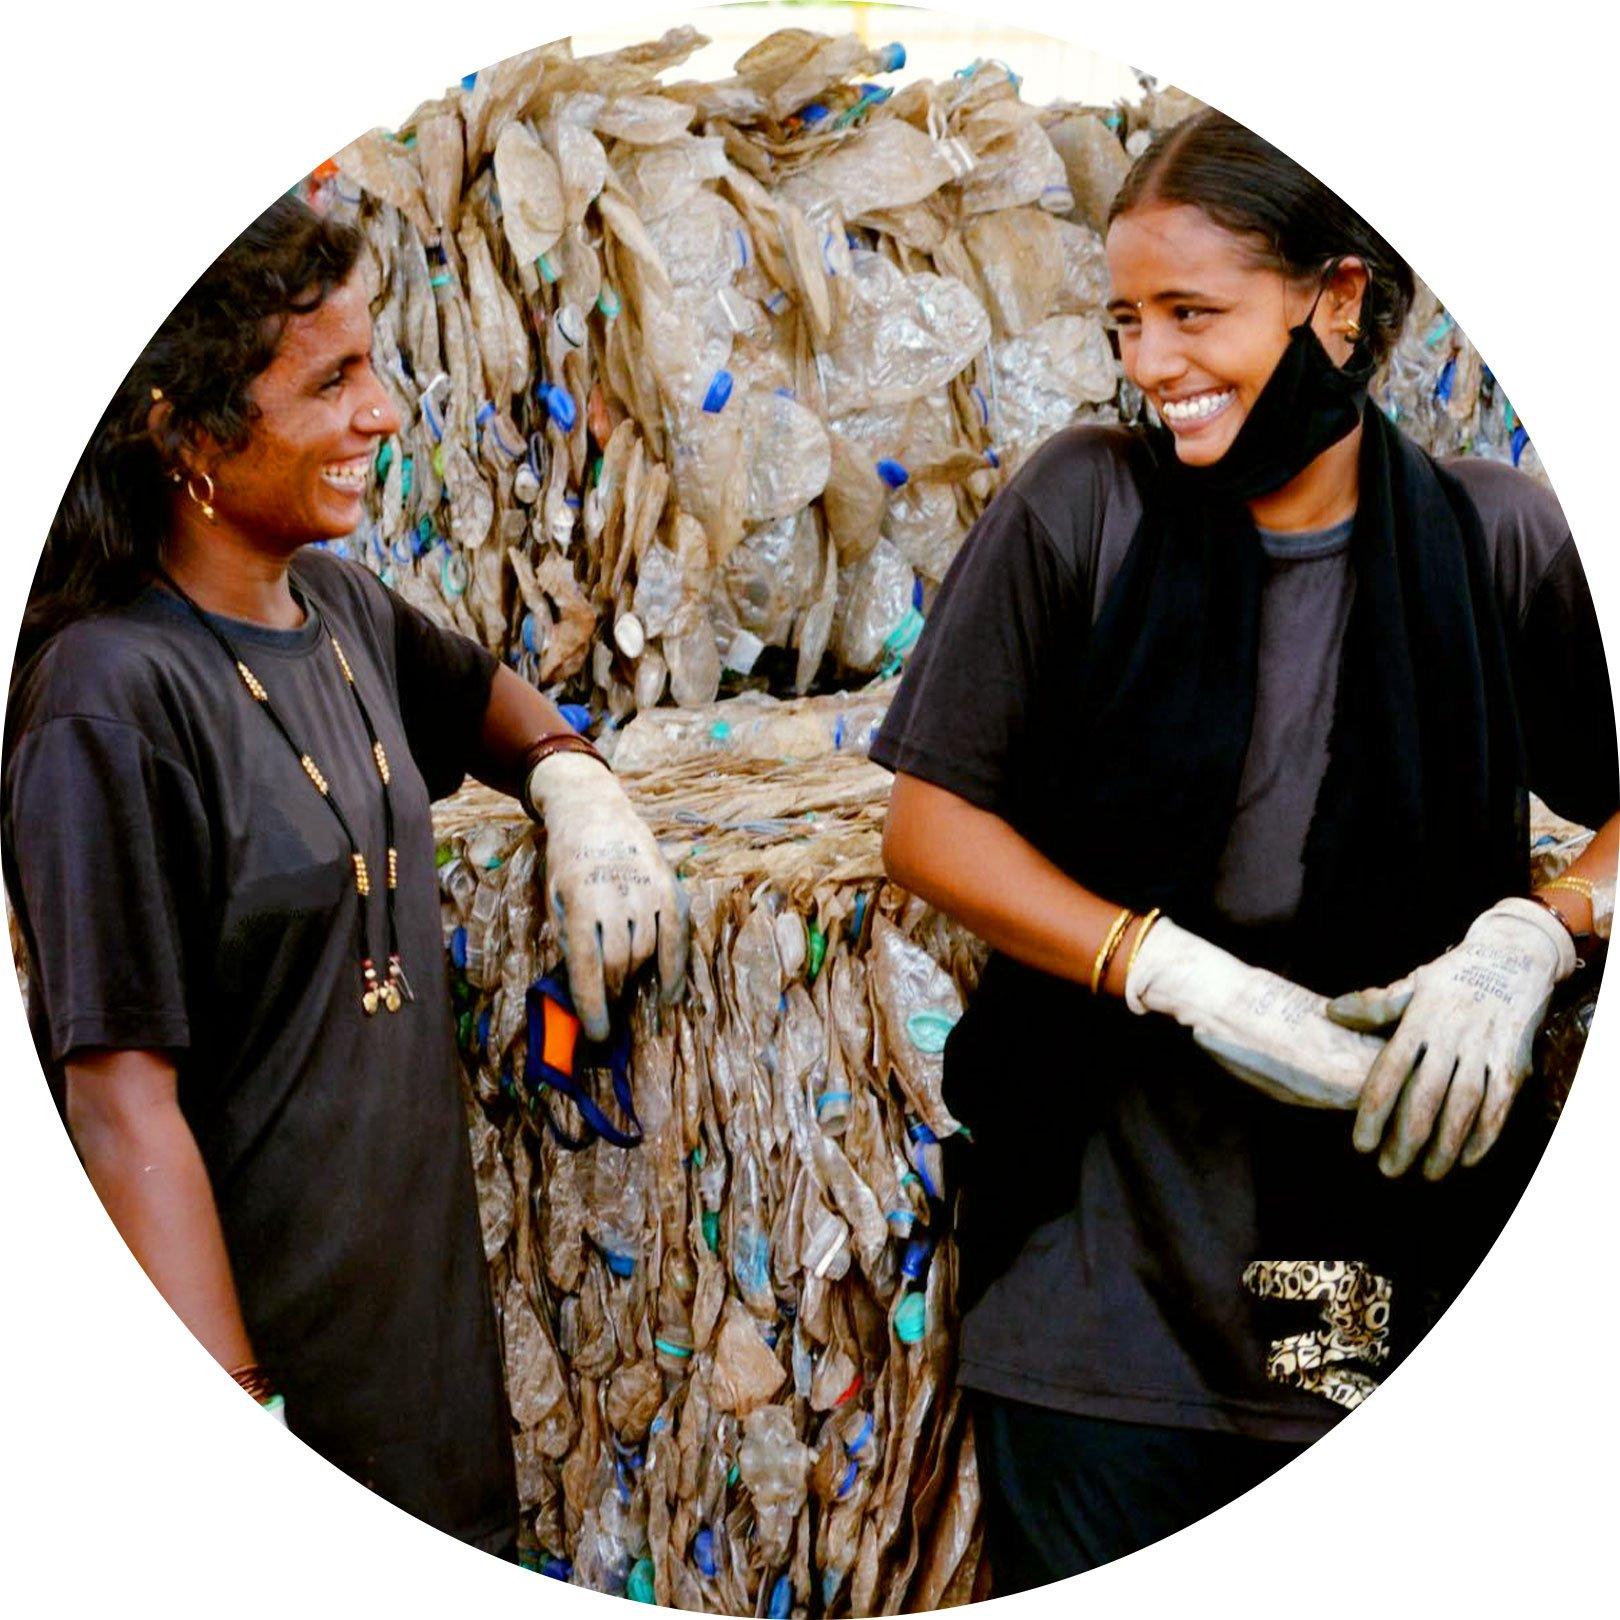 essence a Plastics For Change spolupracují na větší recyklaci